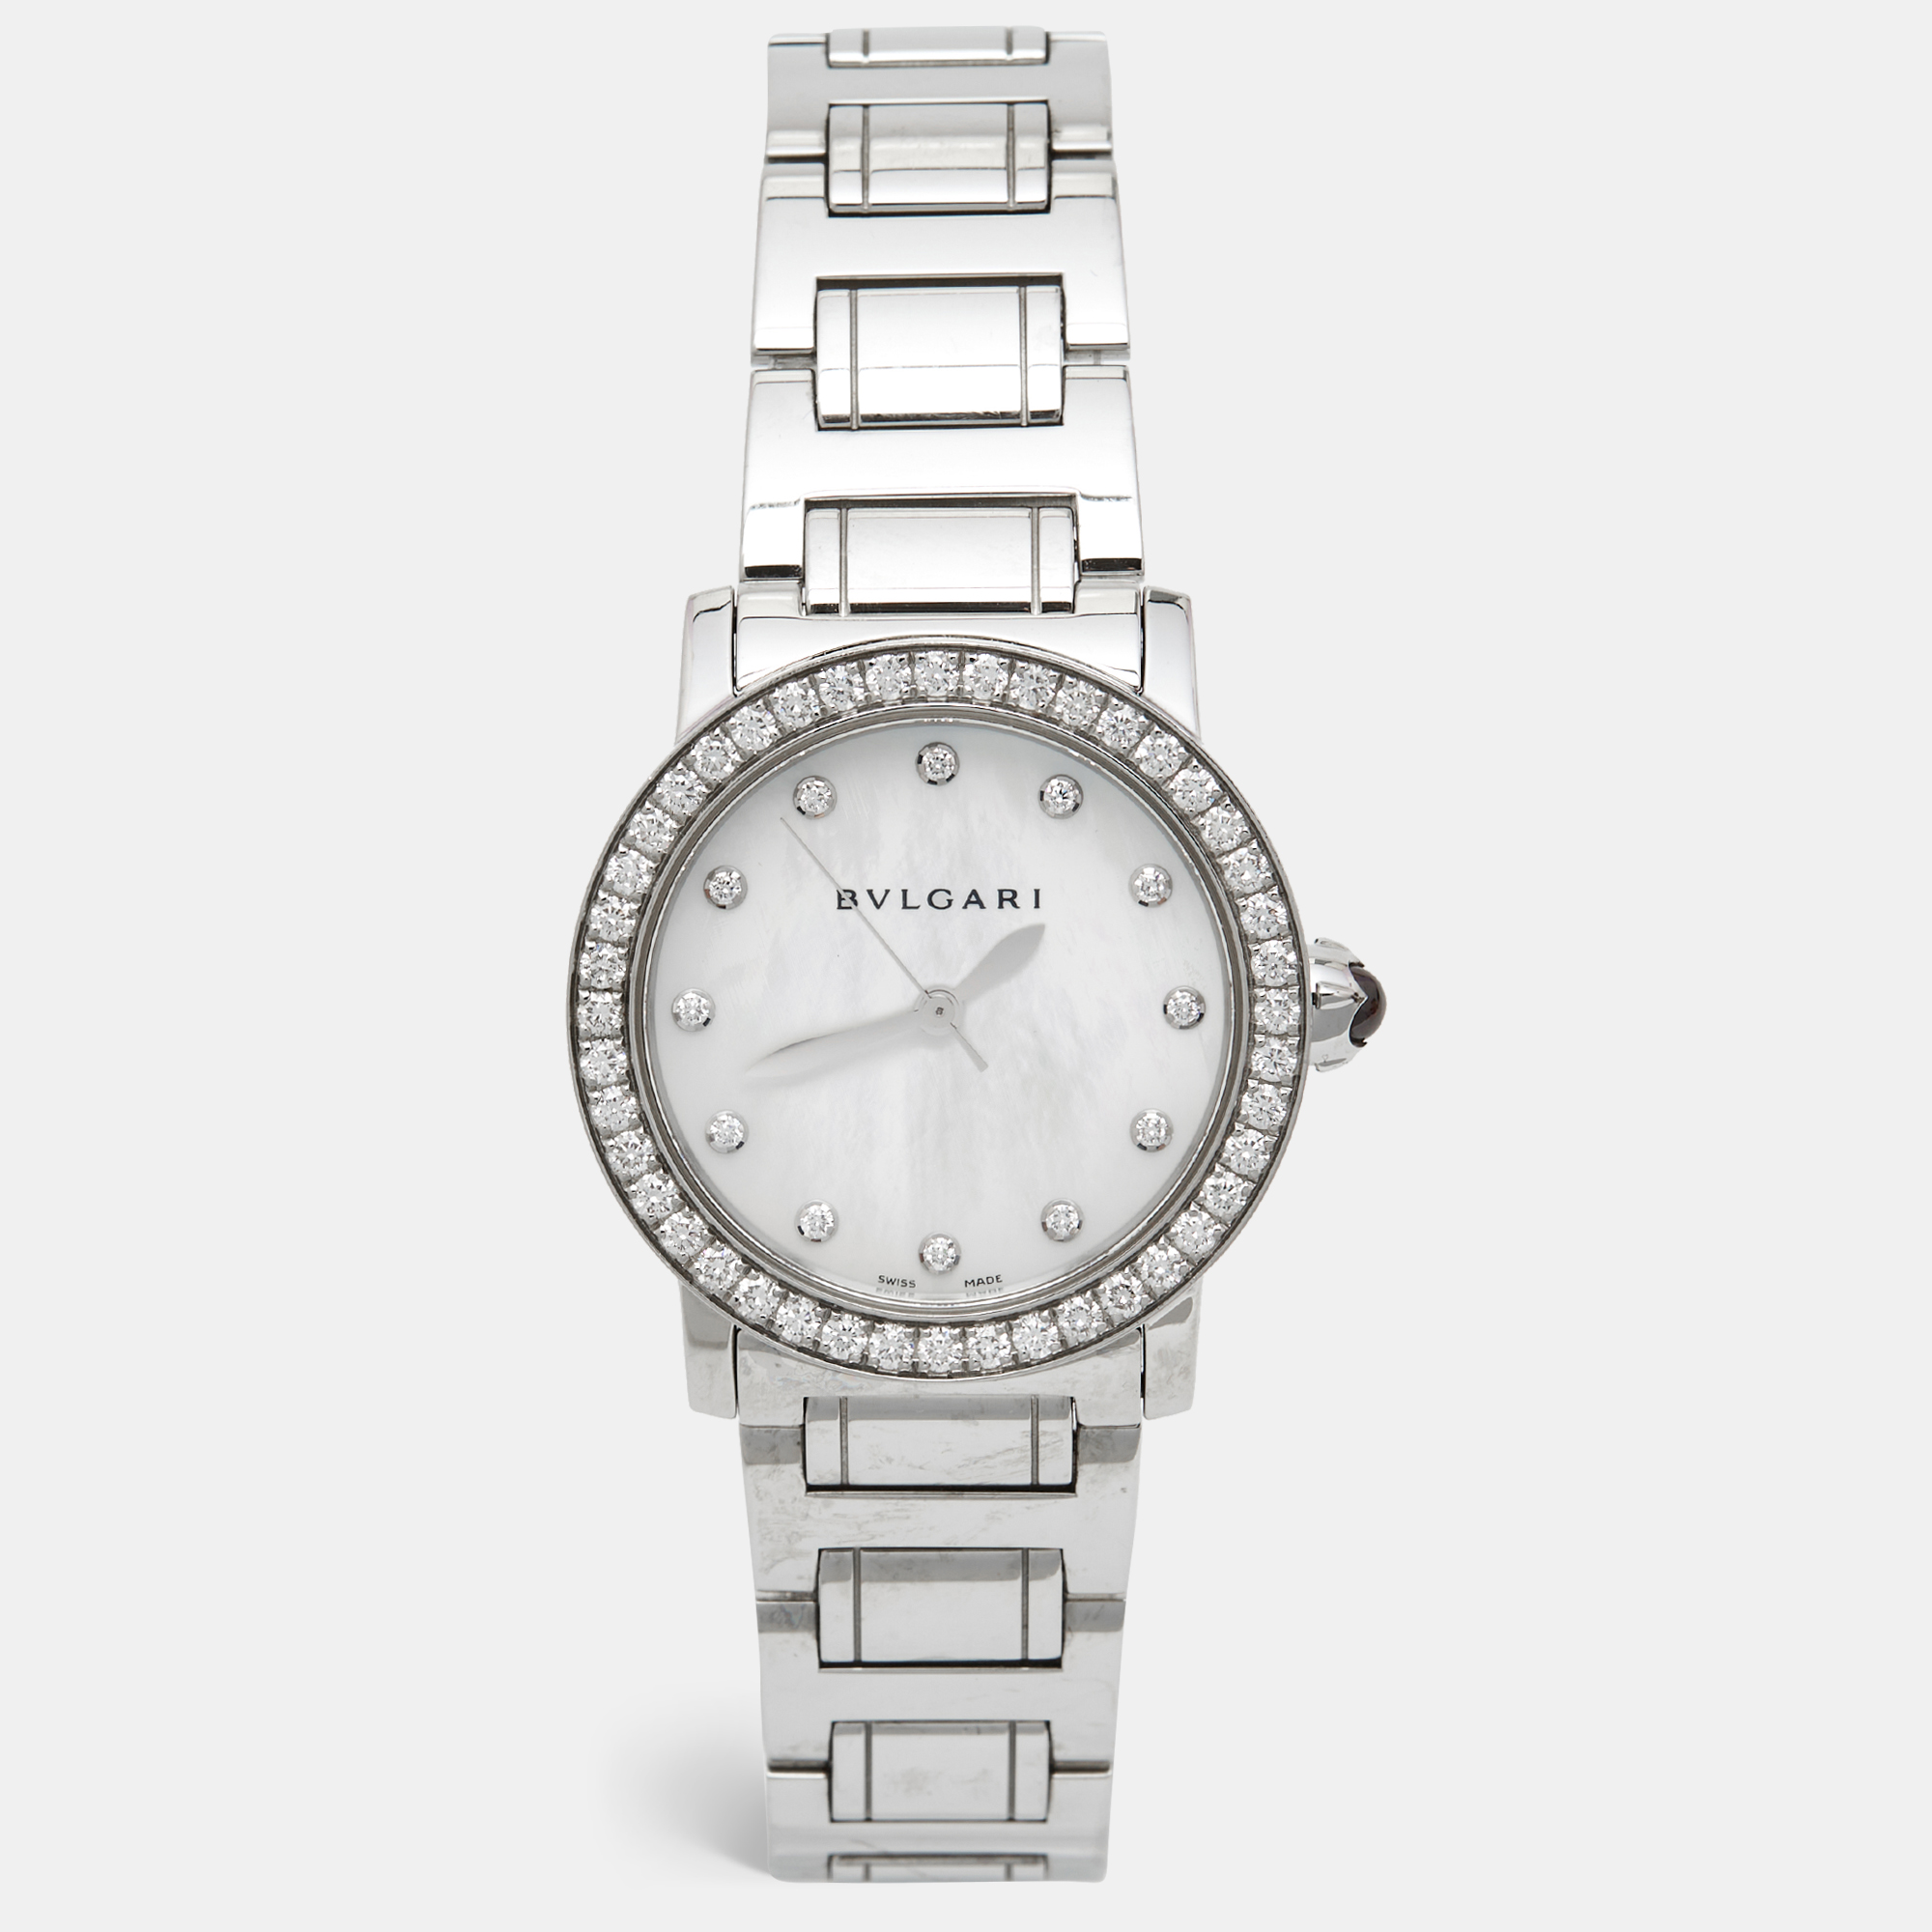 Bvlgari mother of pearl diamond stainless steel bvlgari bvlgari 102375 women's wristwatch 33 mm